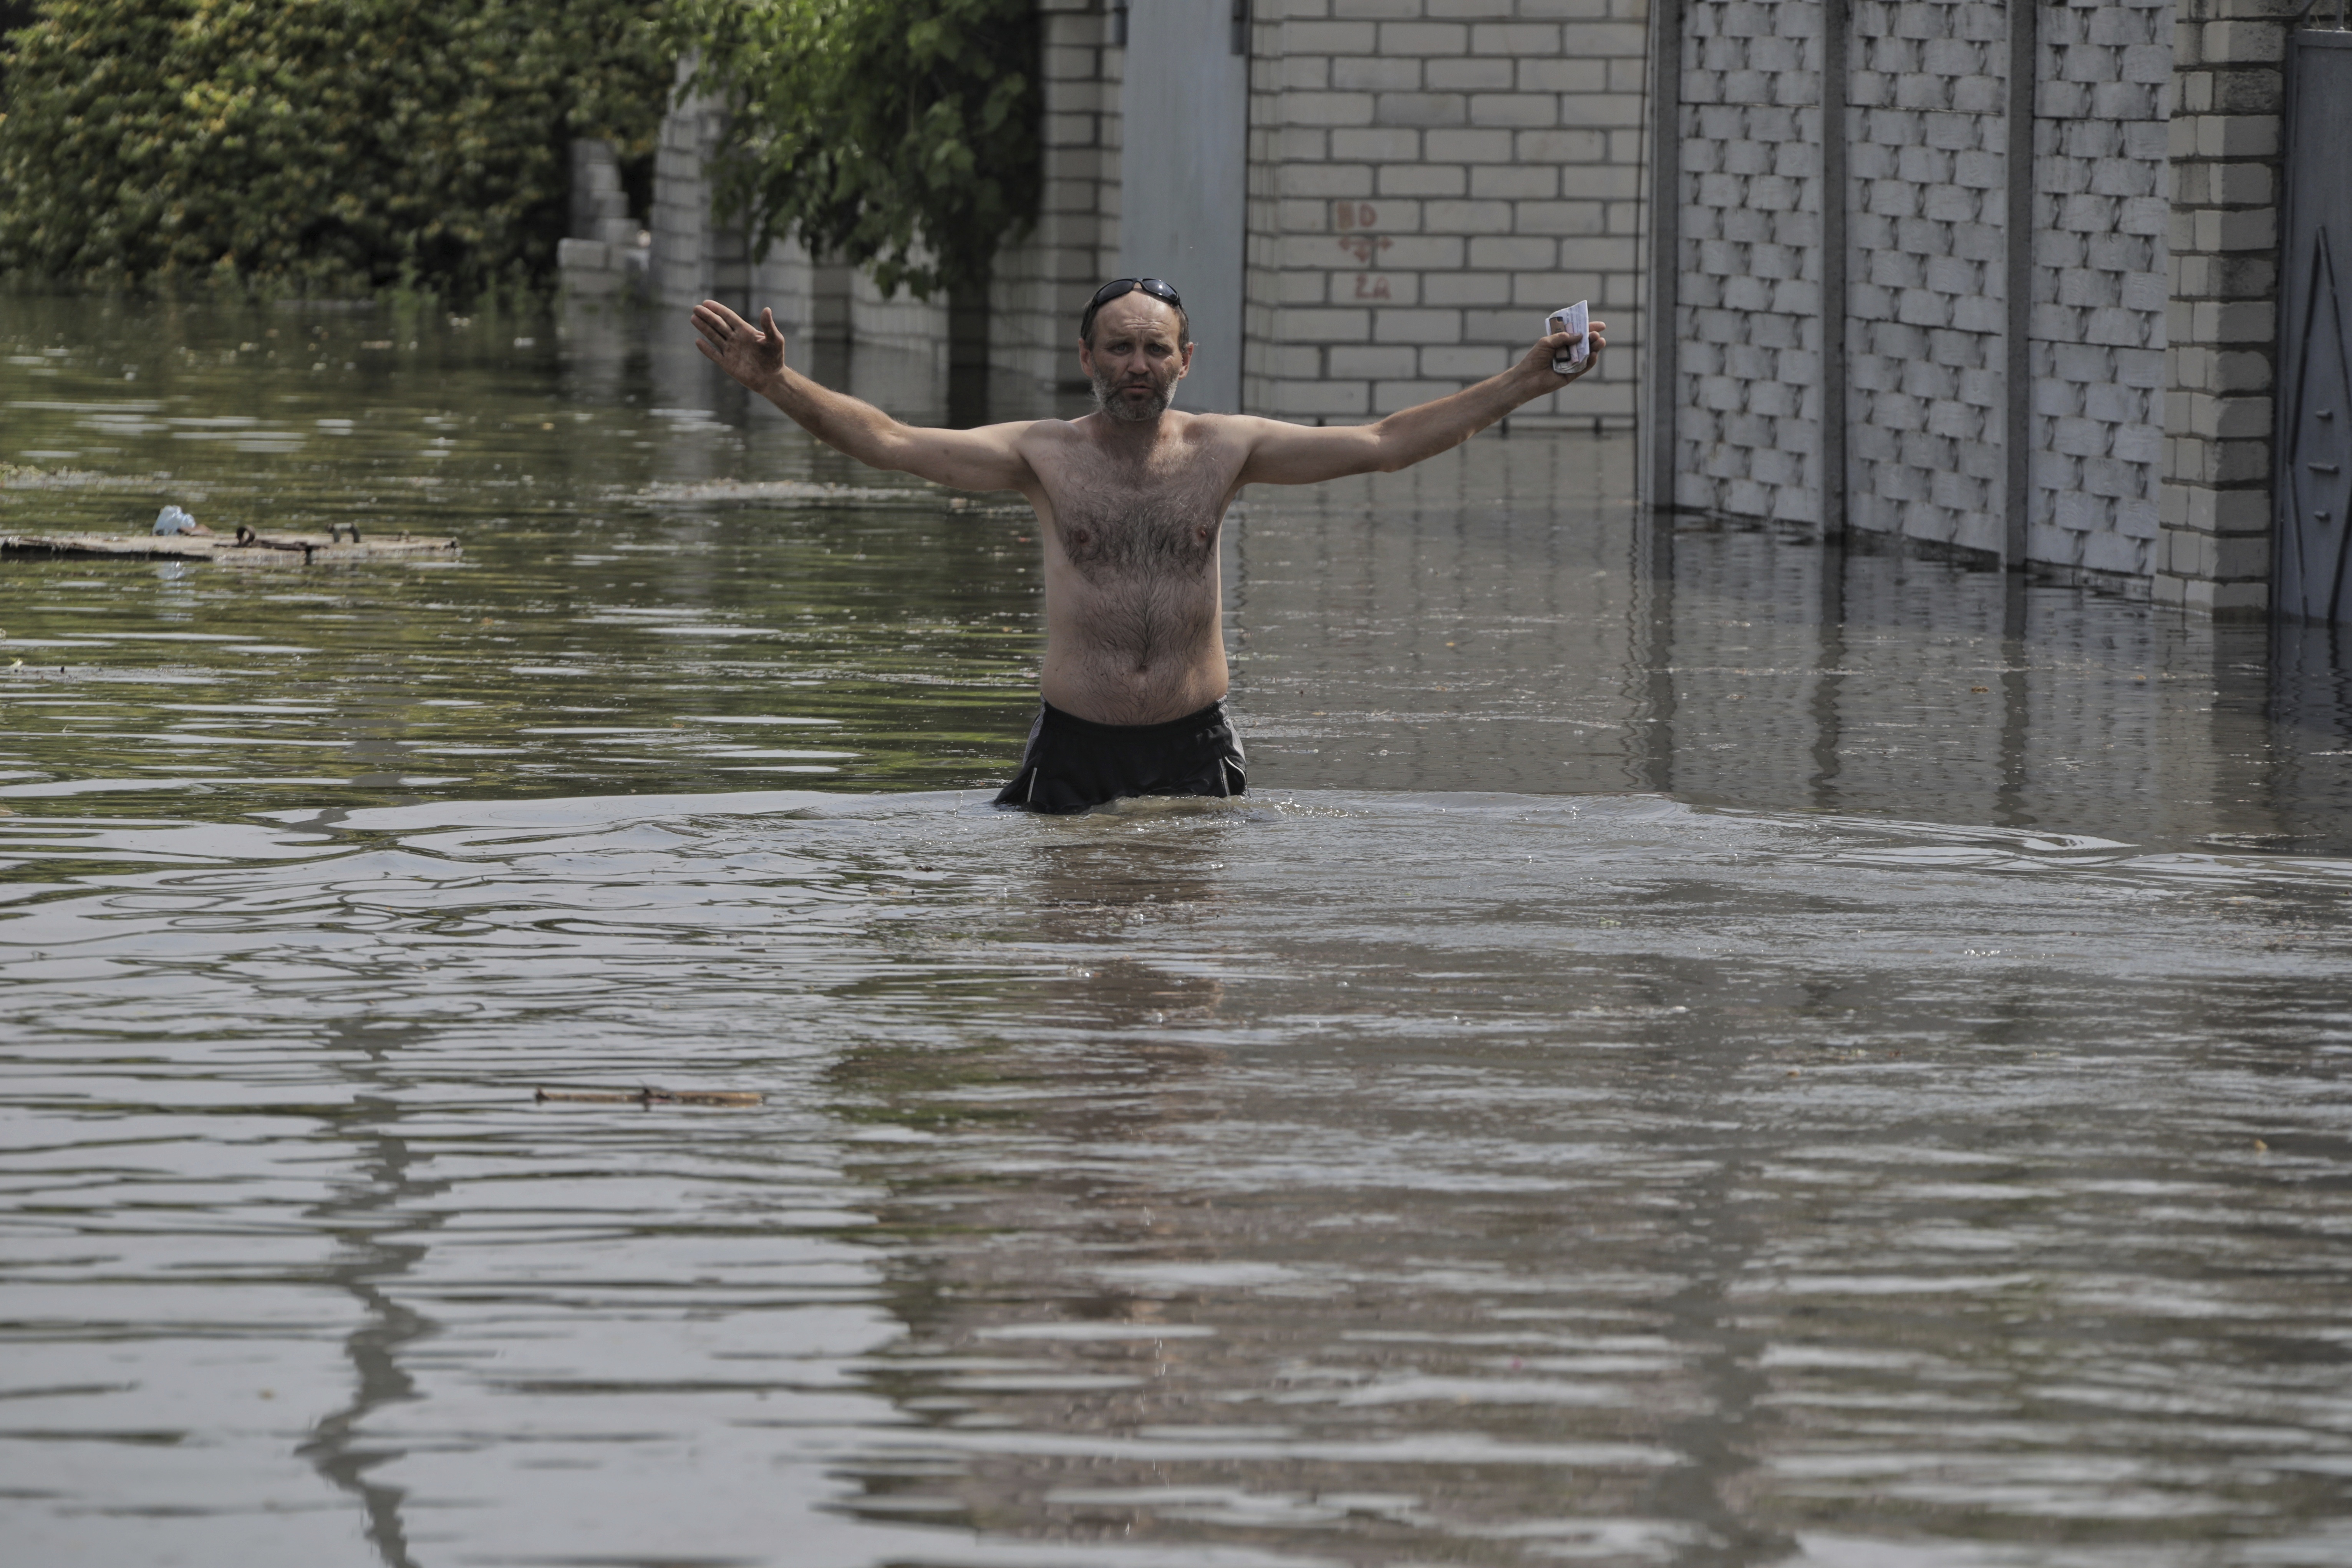 “Los rusos no se preocuparon por las consecuencias cuando atacaron la presa. No merecen perdón”, dijo Oleksandr Sokeryn, que perdió su casa por la inundación. (AP)